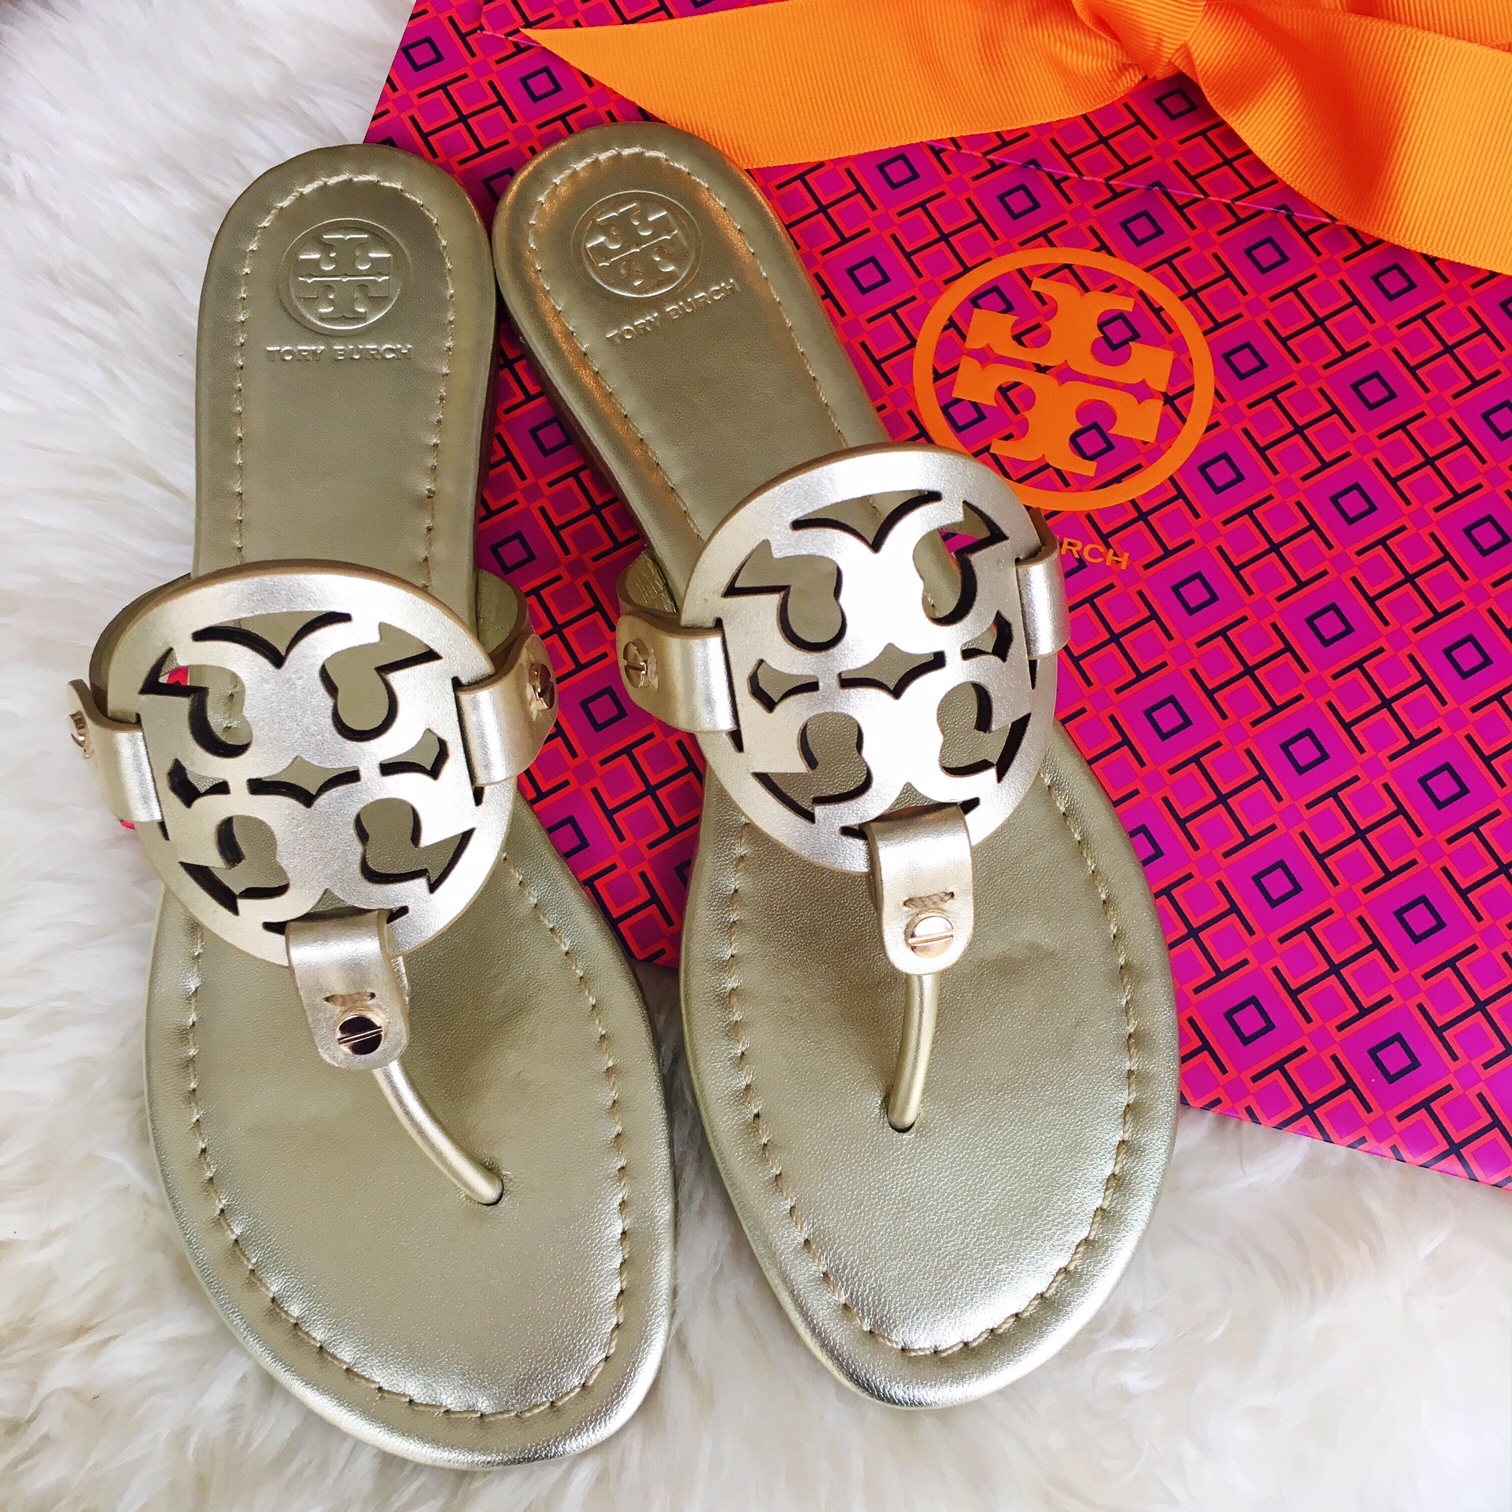 tory burch silver metallic miller sandals